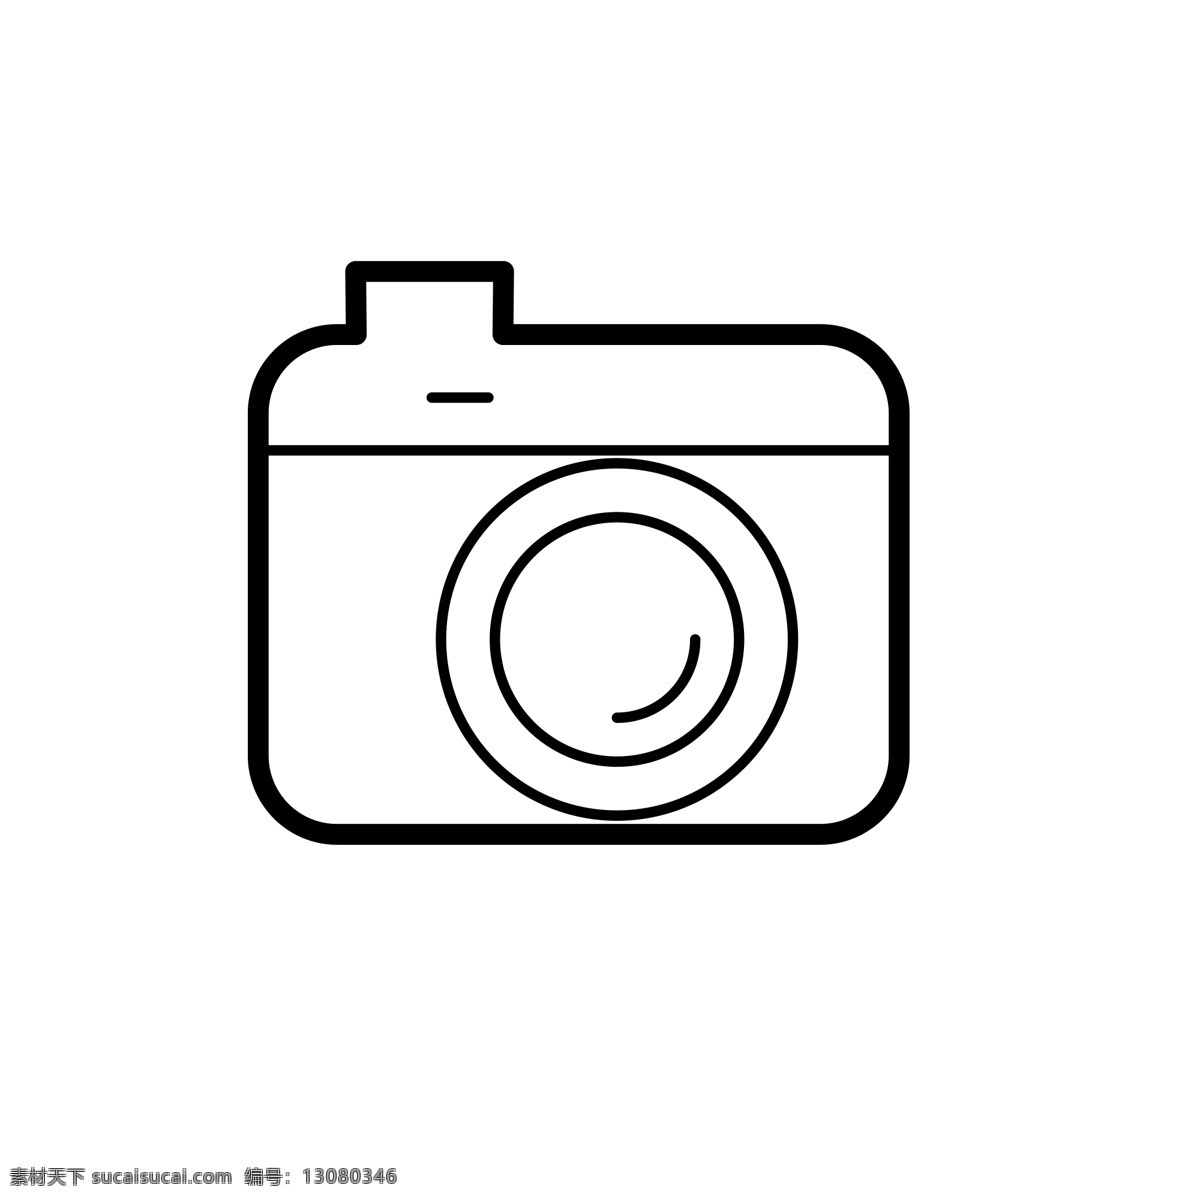 扁平化照相机 相机 照相机 扁平化ui ui图标 手机图标 界面ui 网页ui h5图标